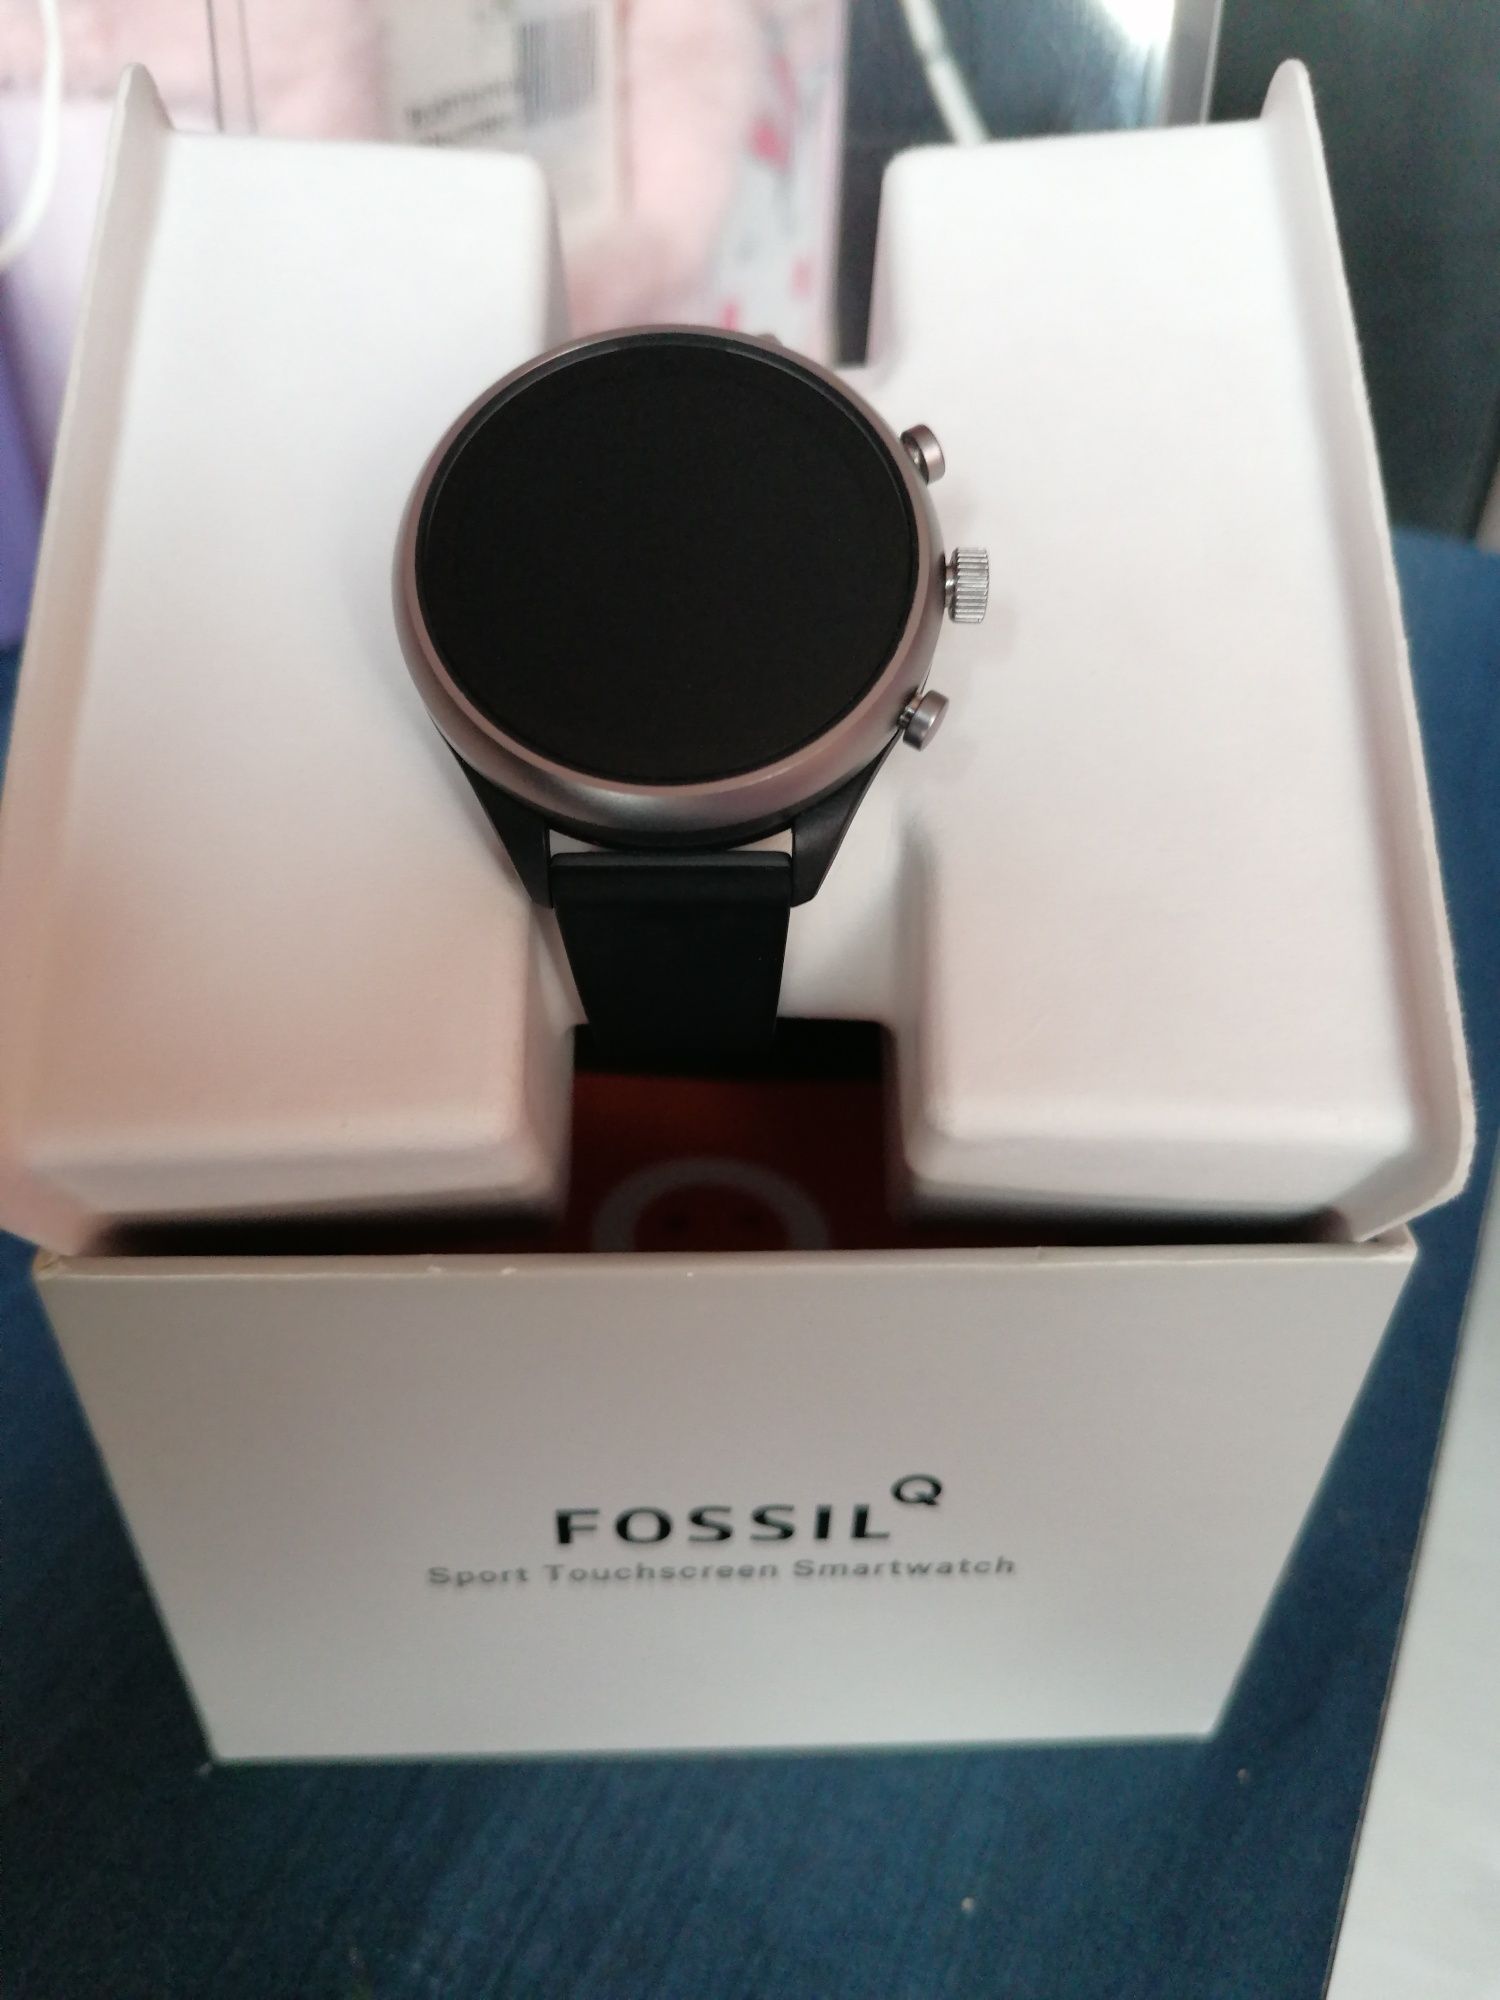 Smartwatch Fossil Q sport touchscreen